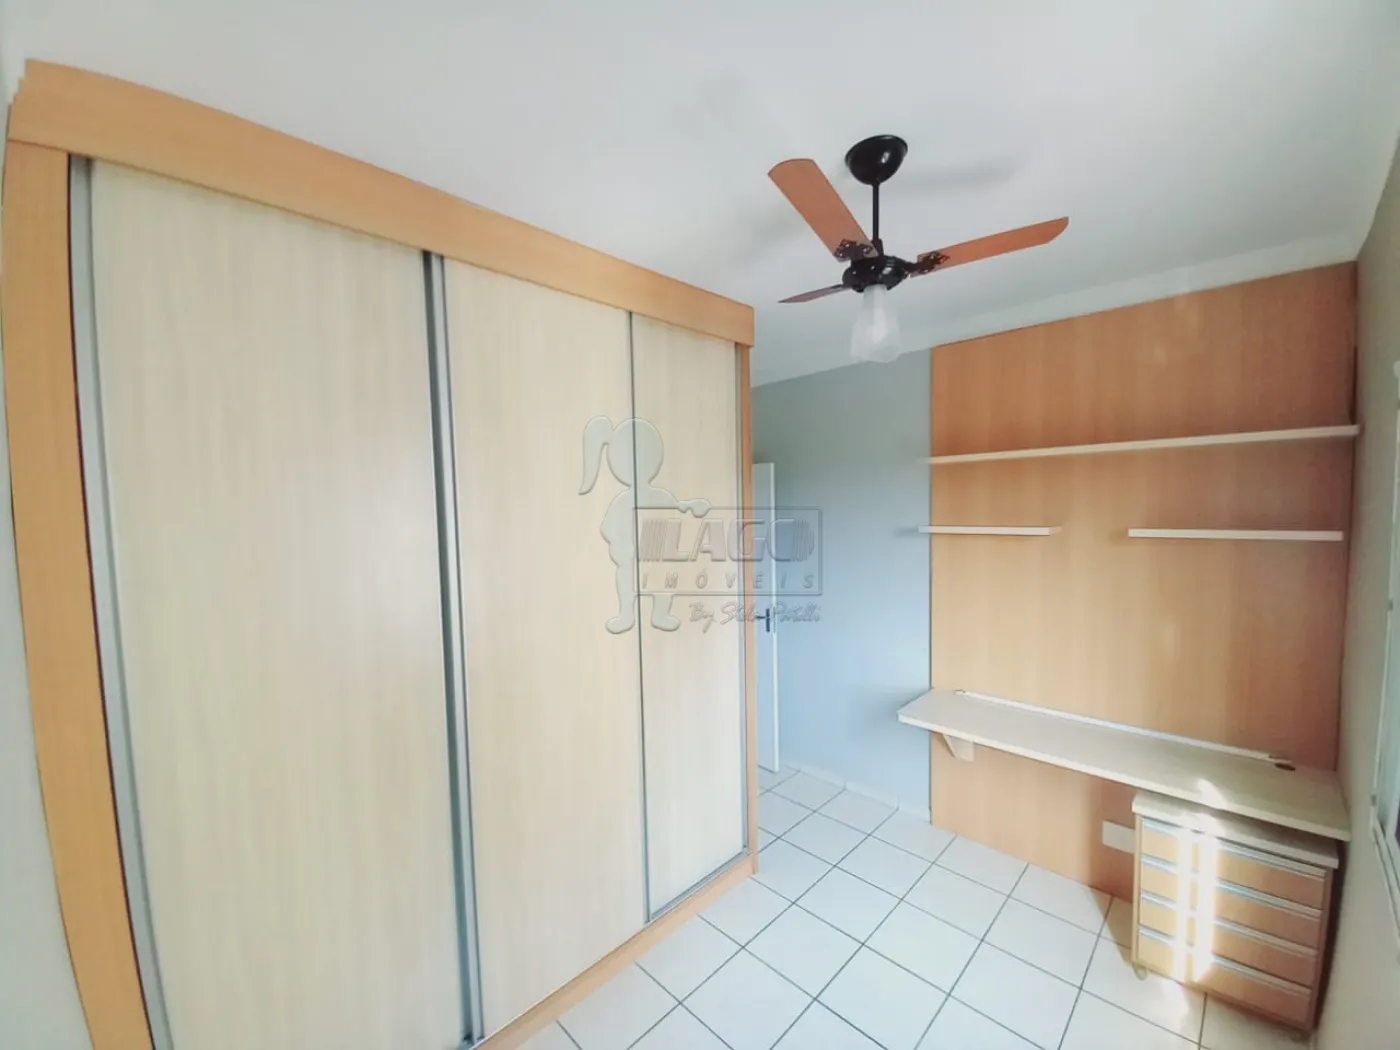 Alugar Apartamentos / Padrão em Ribeirão Preto R$ 1.700,00 - Foto 13